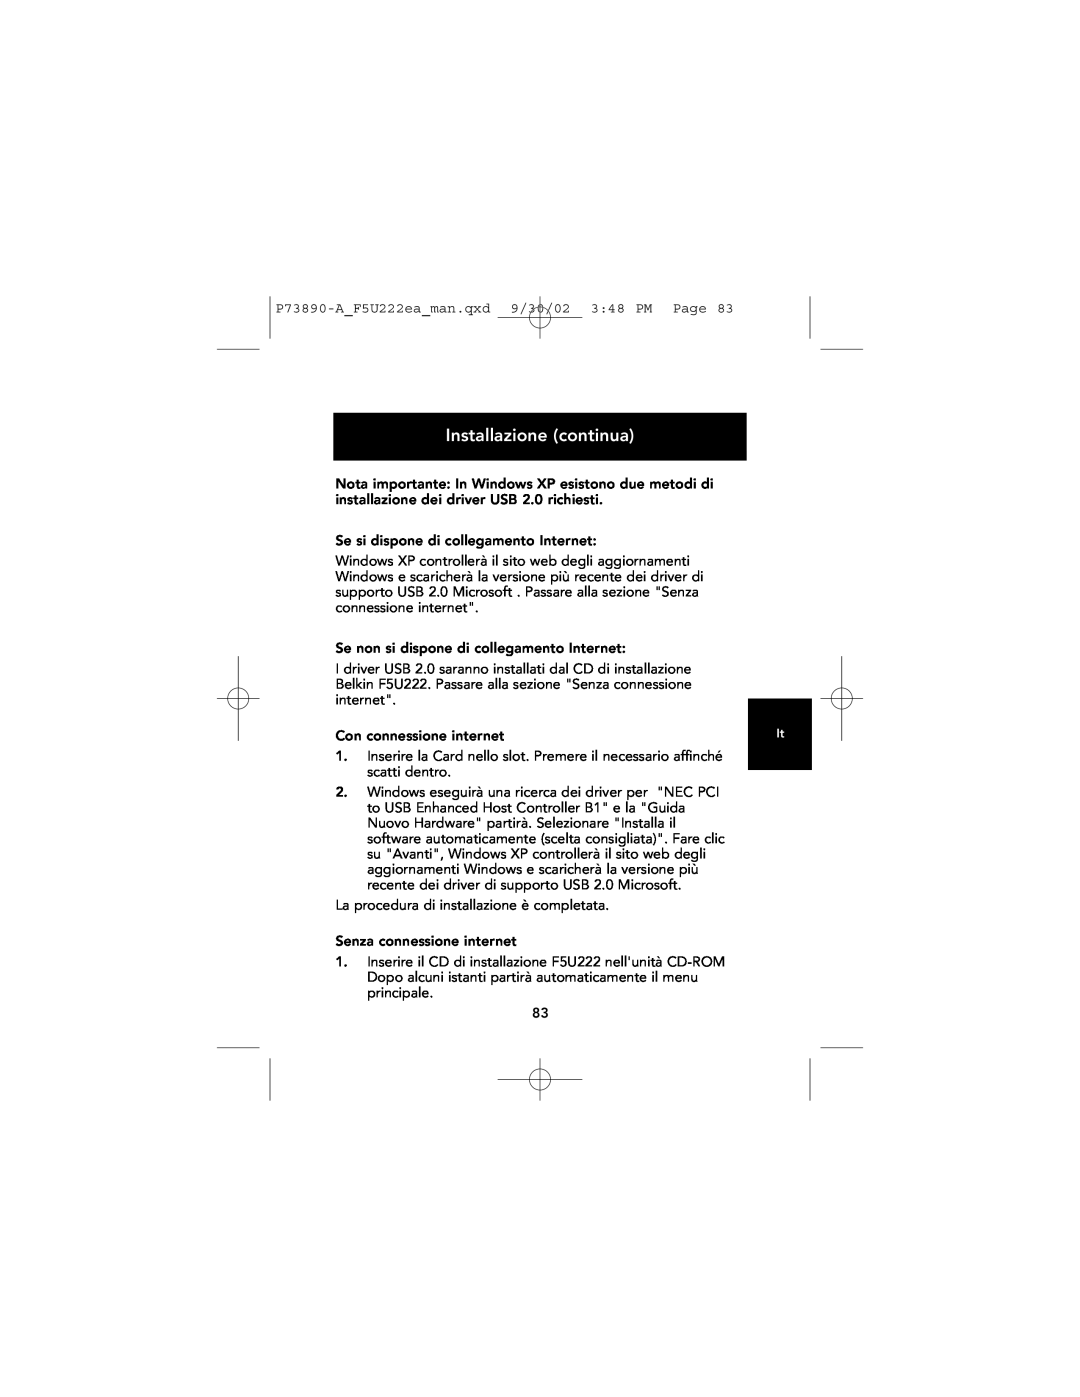 Belkin P73890EA-A manual Con connessione internet, Installazione continua 